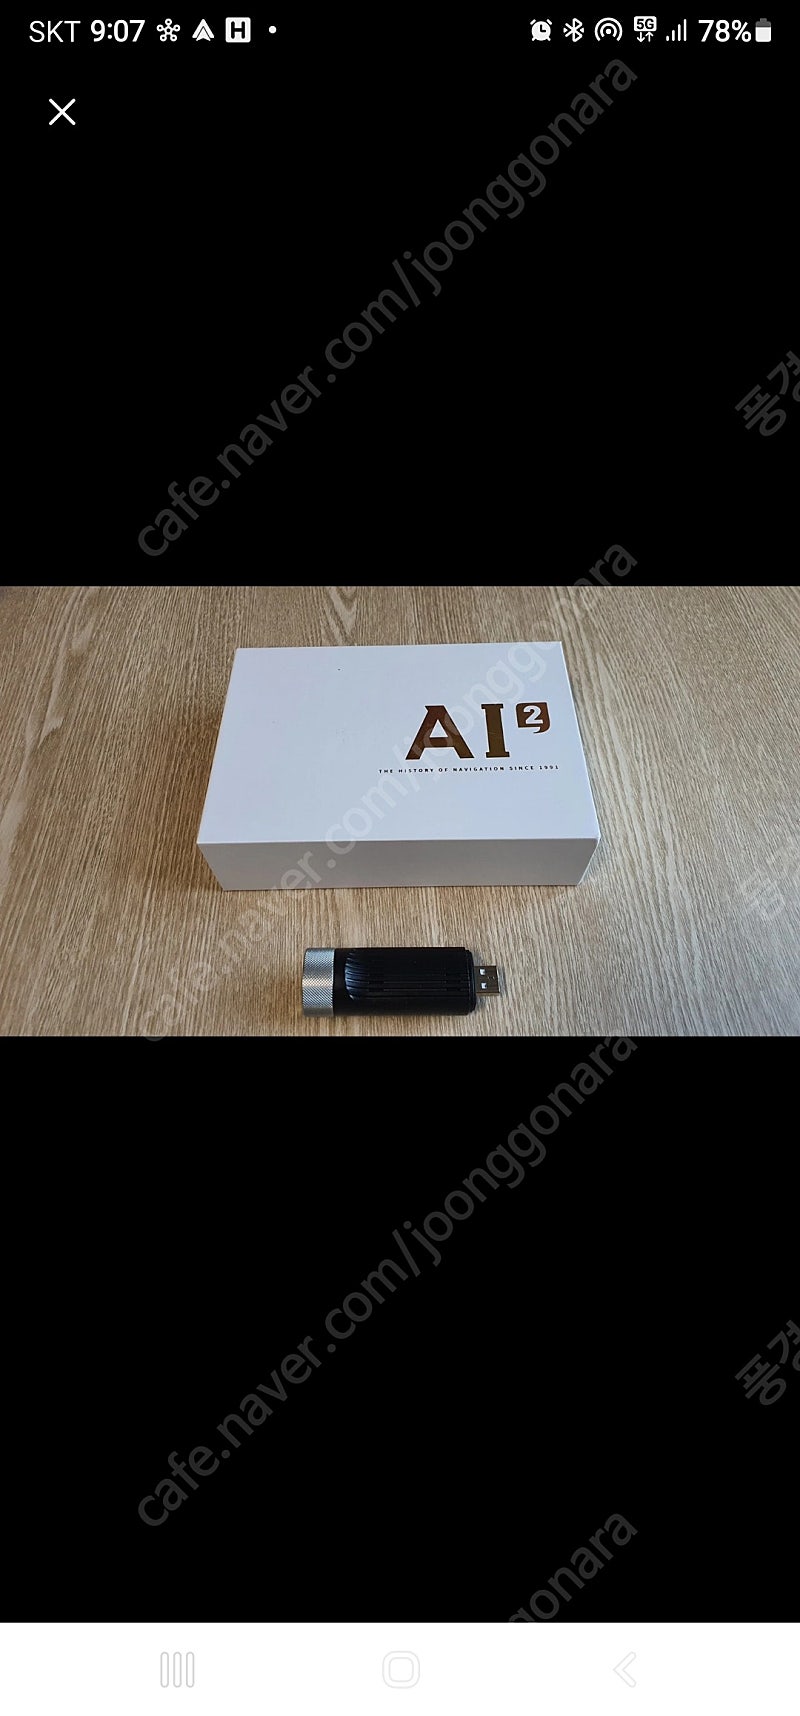 파인드라이브 AI2(USB형)